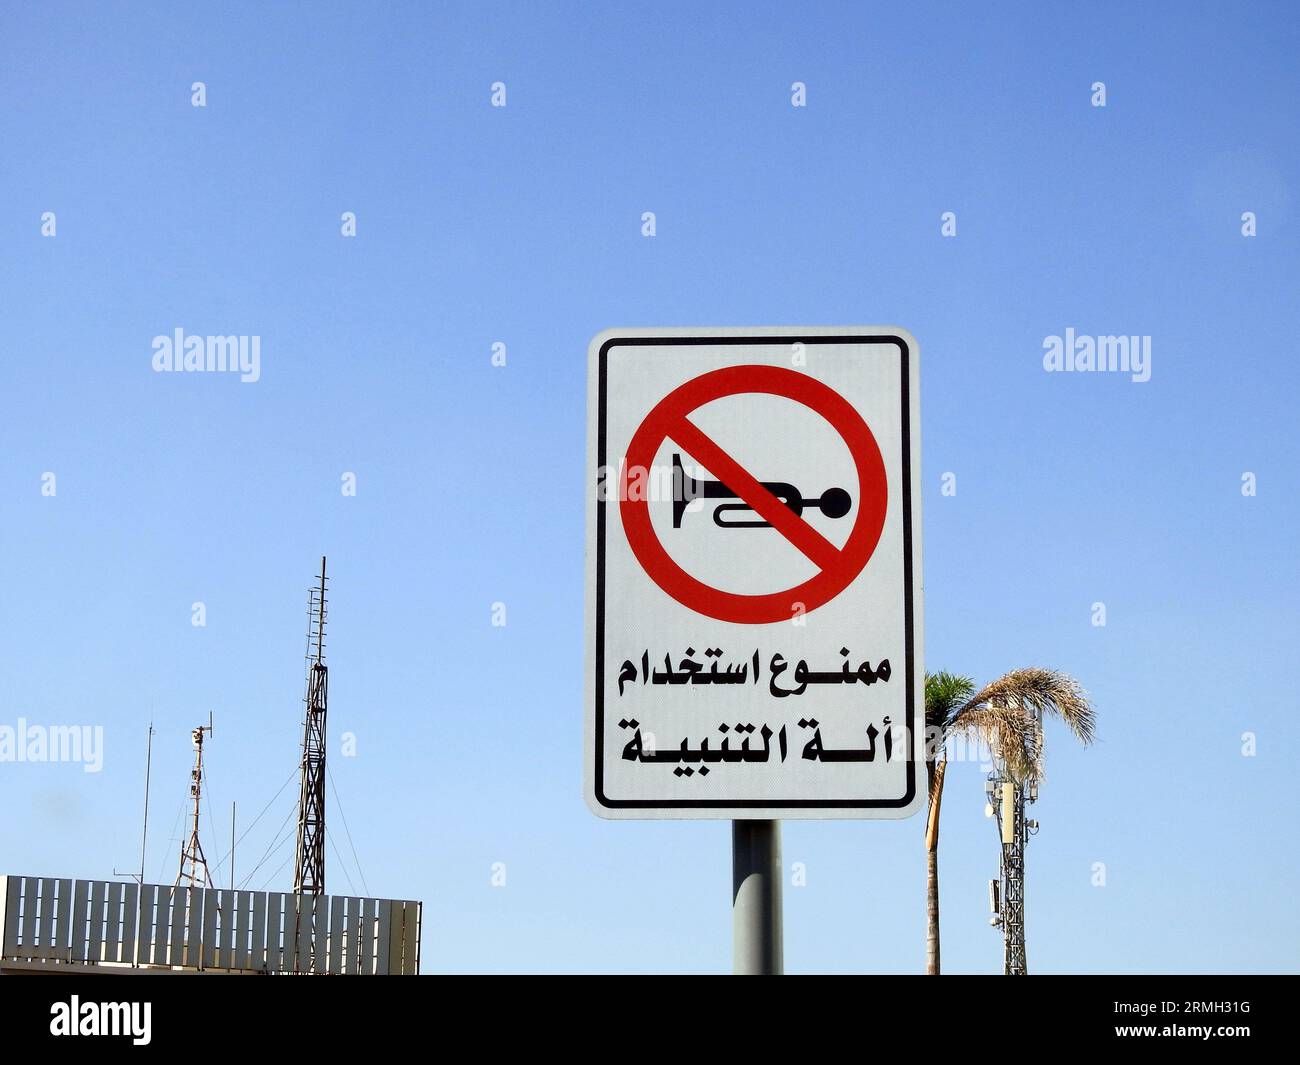 Ein Verkehrszeichen am Straßenrand, Übersetzung des arabischen Textes (Autohupe ist nicht erlaubt), ein verbotener Bereich für die Verwendung des autohupengeräusches, cro Stockfoto